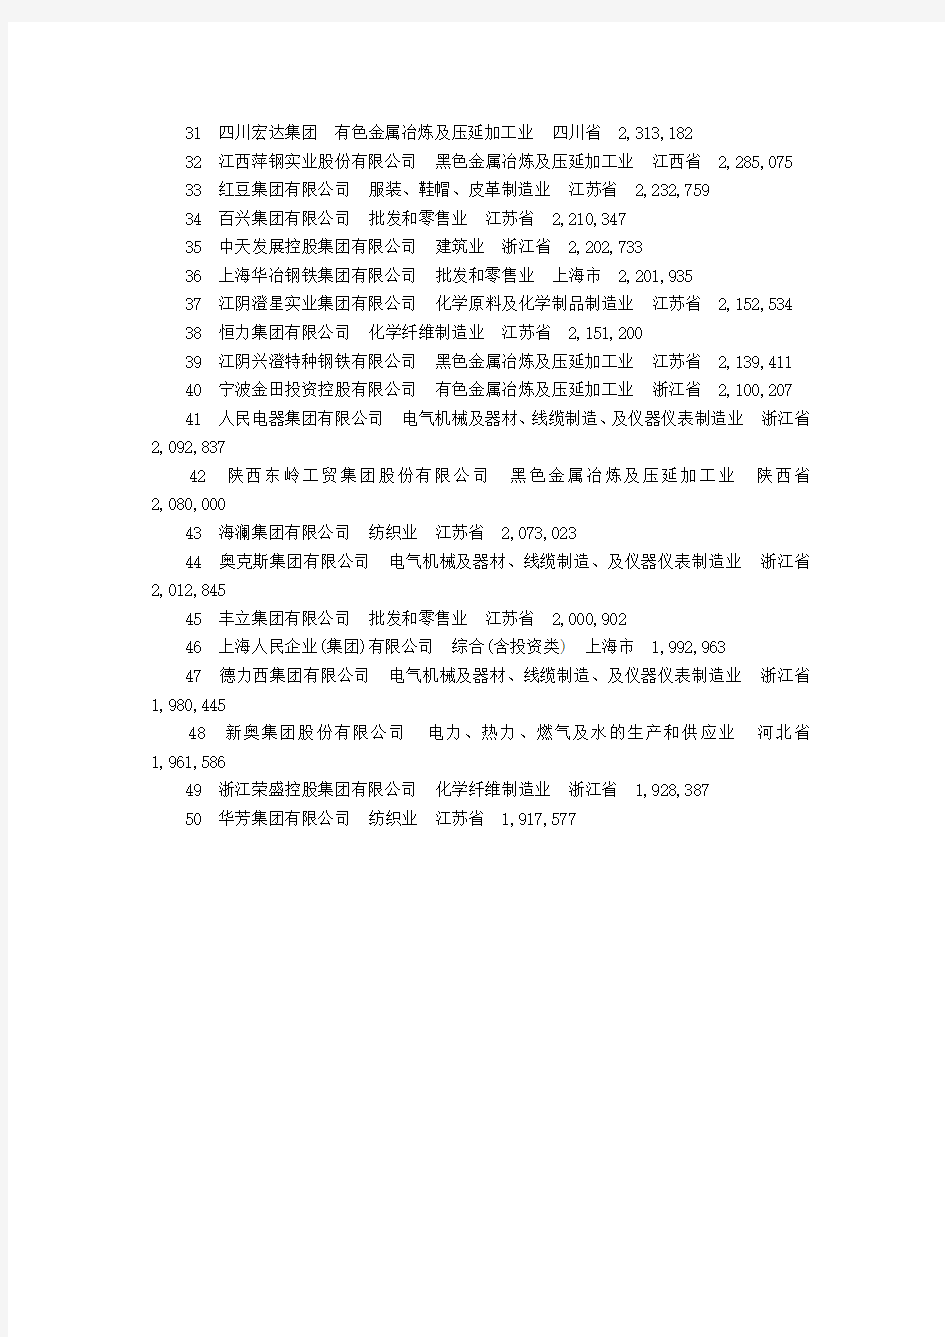 2010中国民营企业500强全部名单(1-50名)